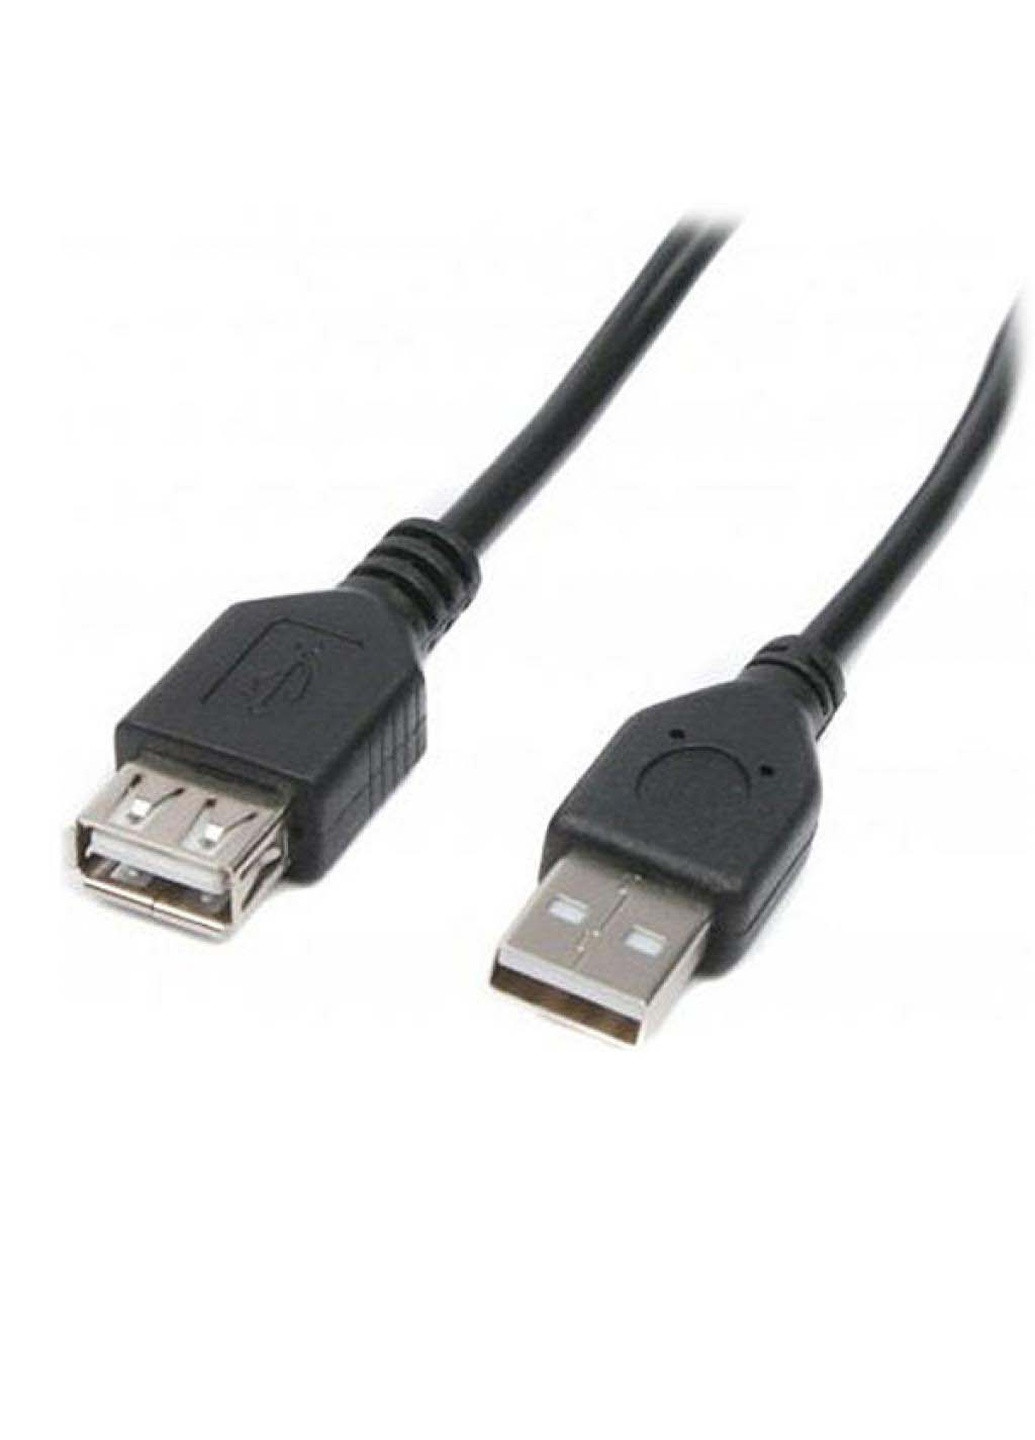 Дата кабель USB 2.0 AM / AF 3.0m (U-AMAF-10) Maxxter usb 2.0 am/af 3.0m (239382776)